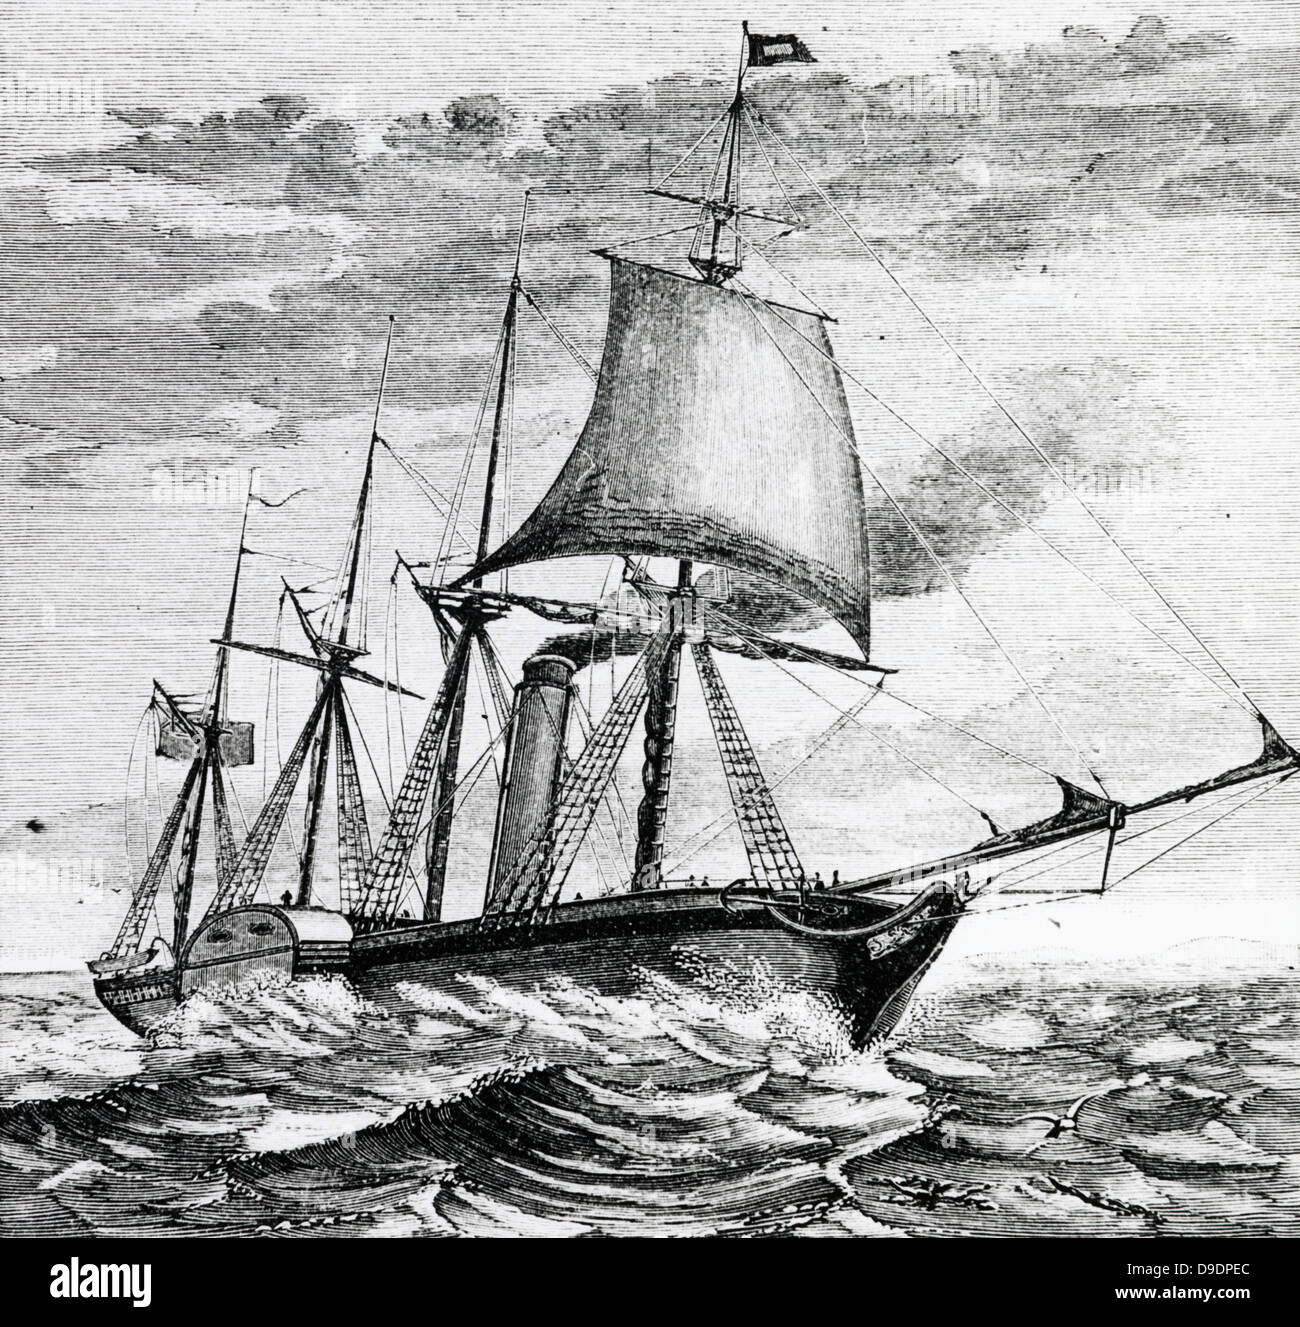 SS "Great Western" (1837) transatlantischen Raddampfer von Isambard Kingdom Brunel entworfenen. Gravur von 1882 Stockfoto